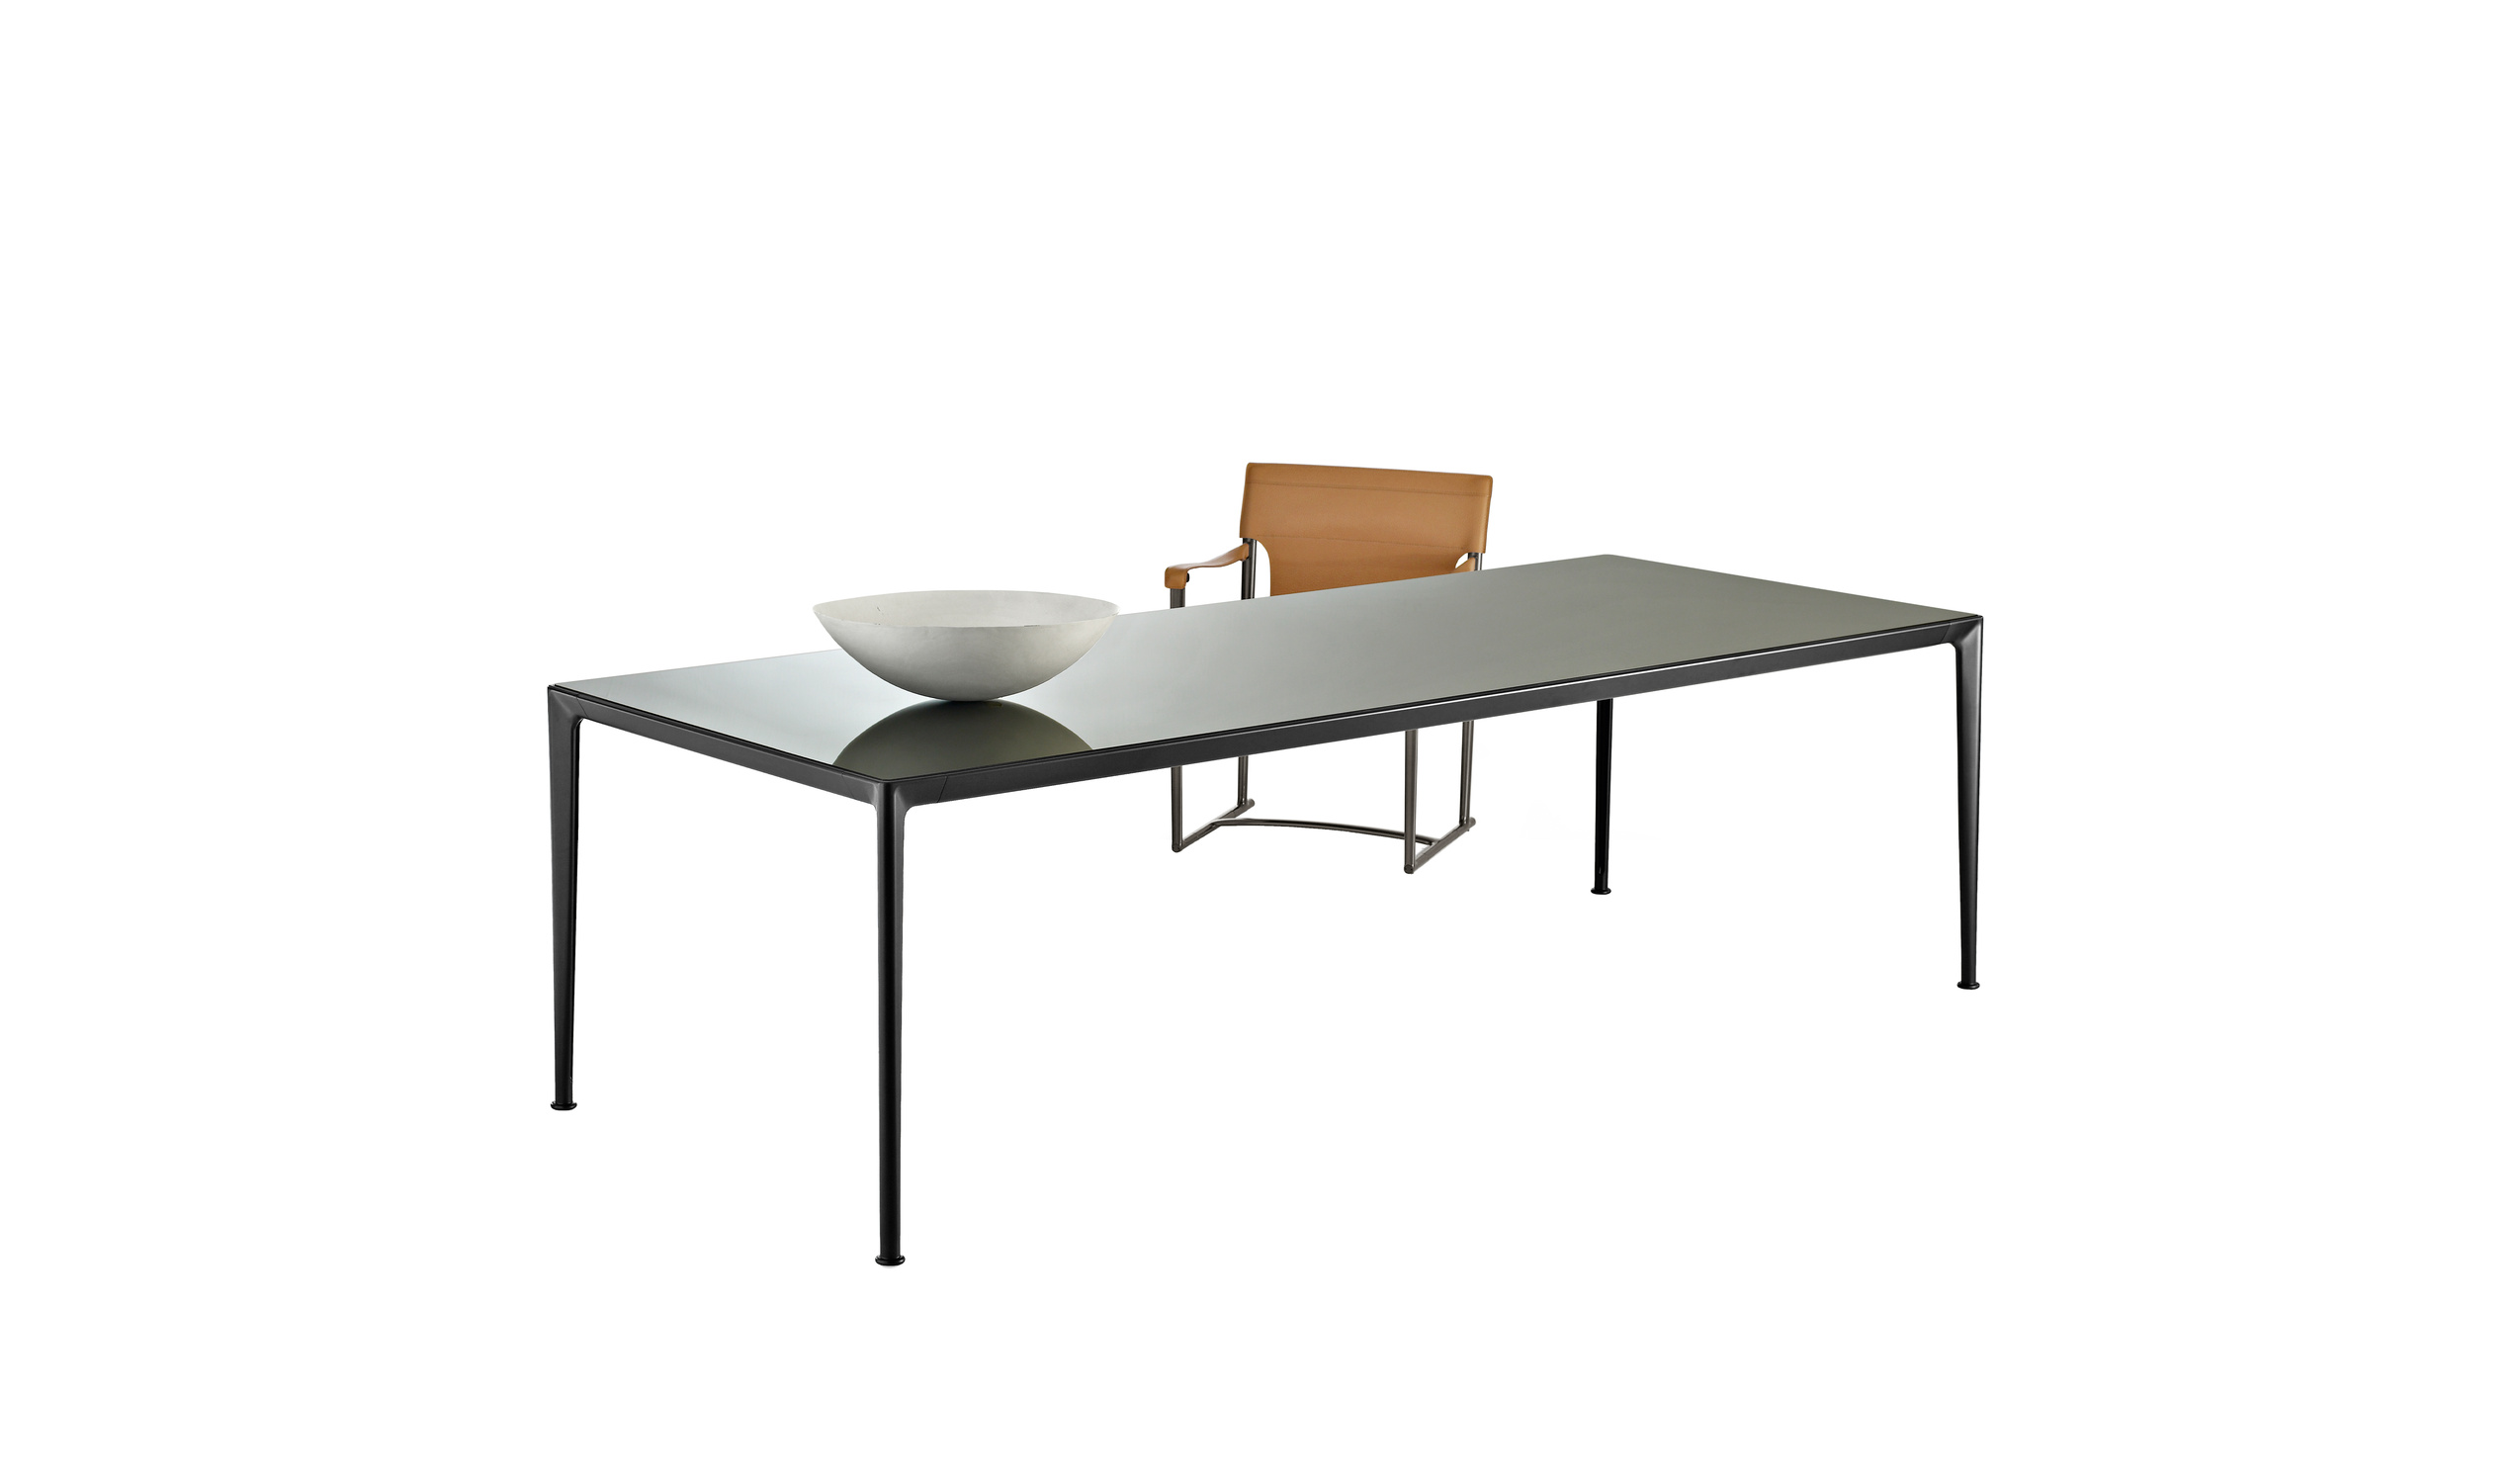 Italian designer modern tables - Mirto Indoor Tables 4